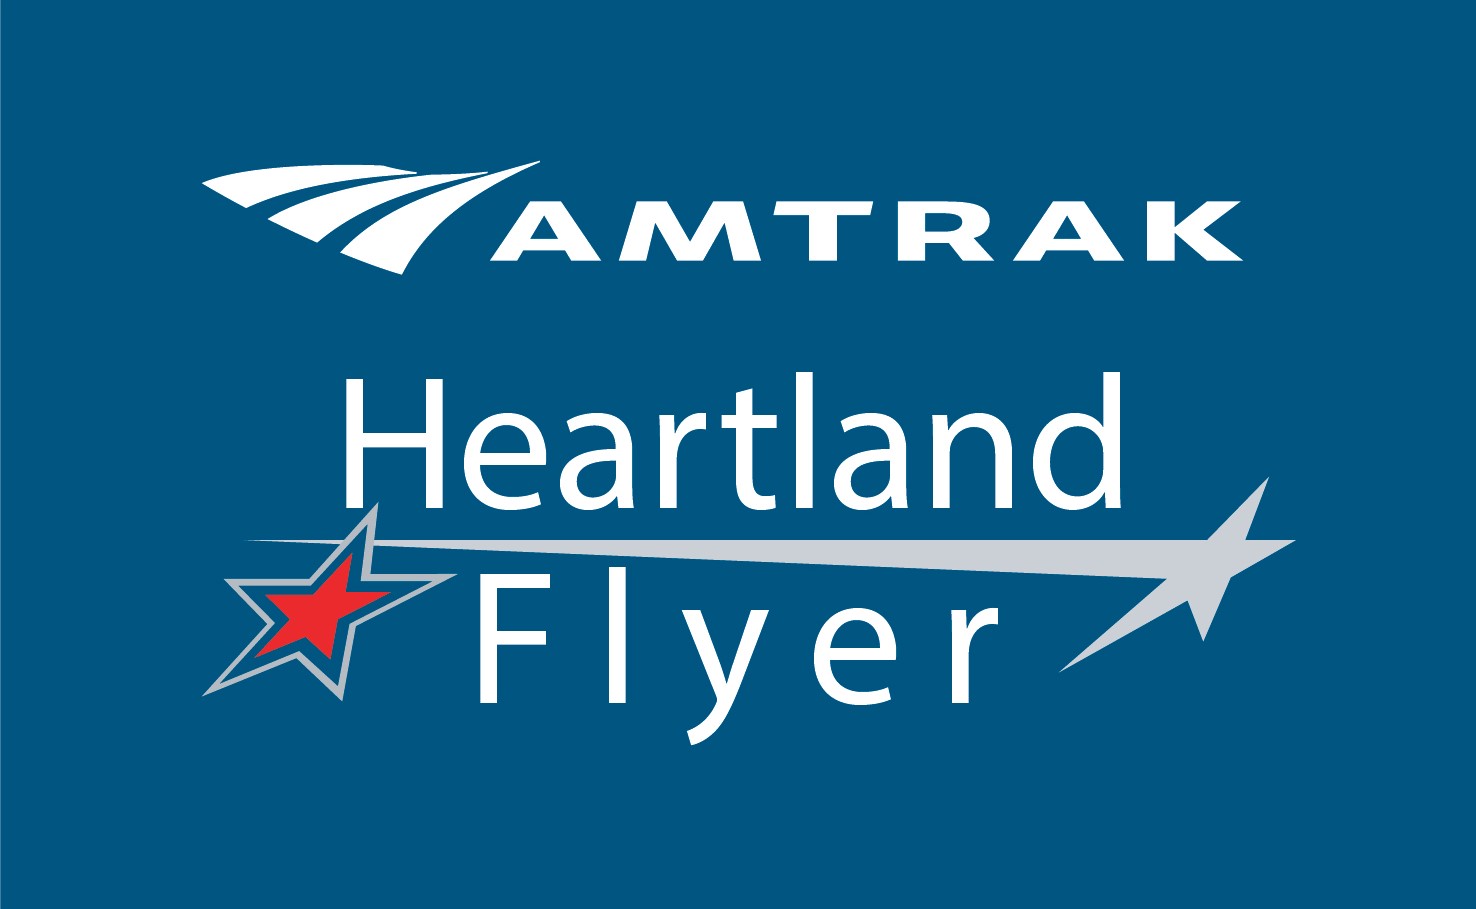 Heartland Flyer logo